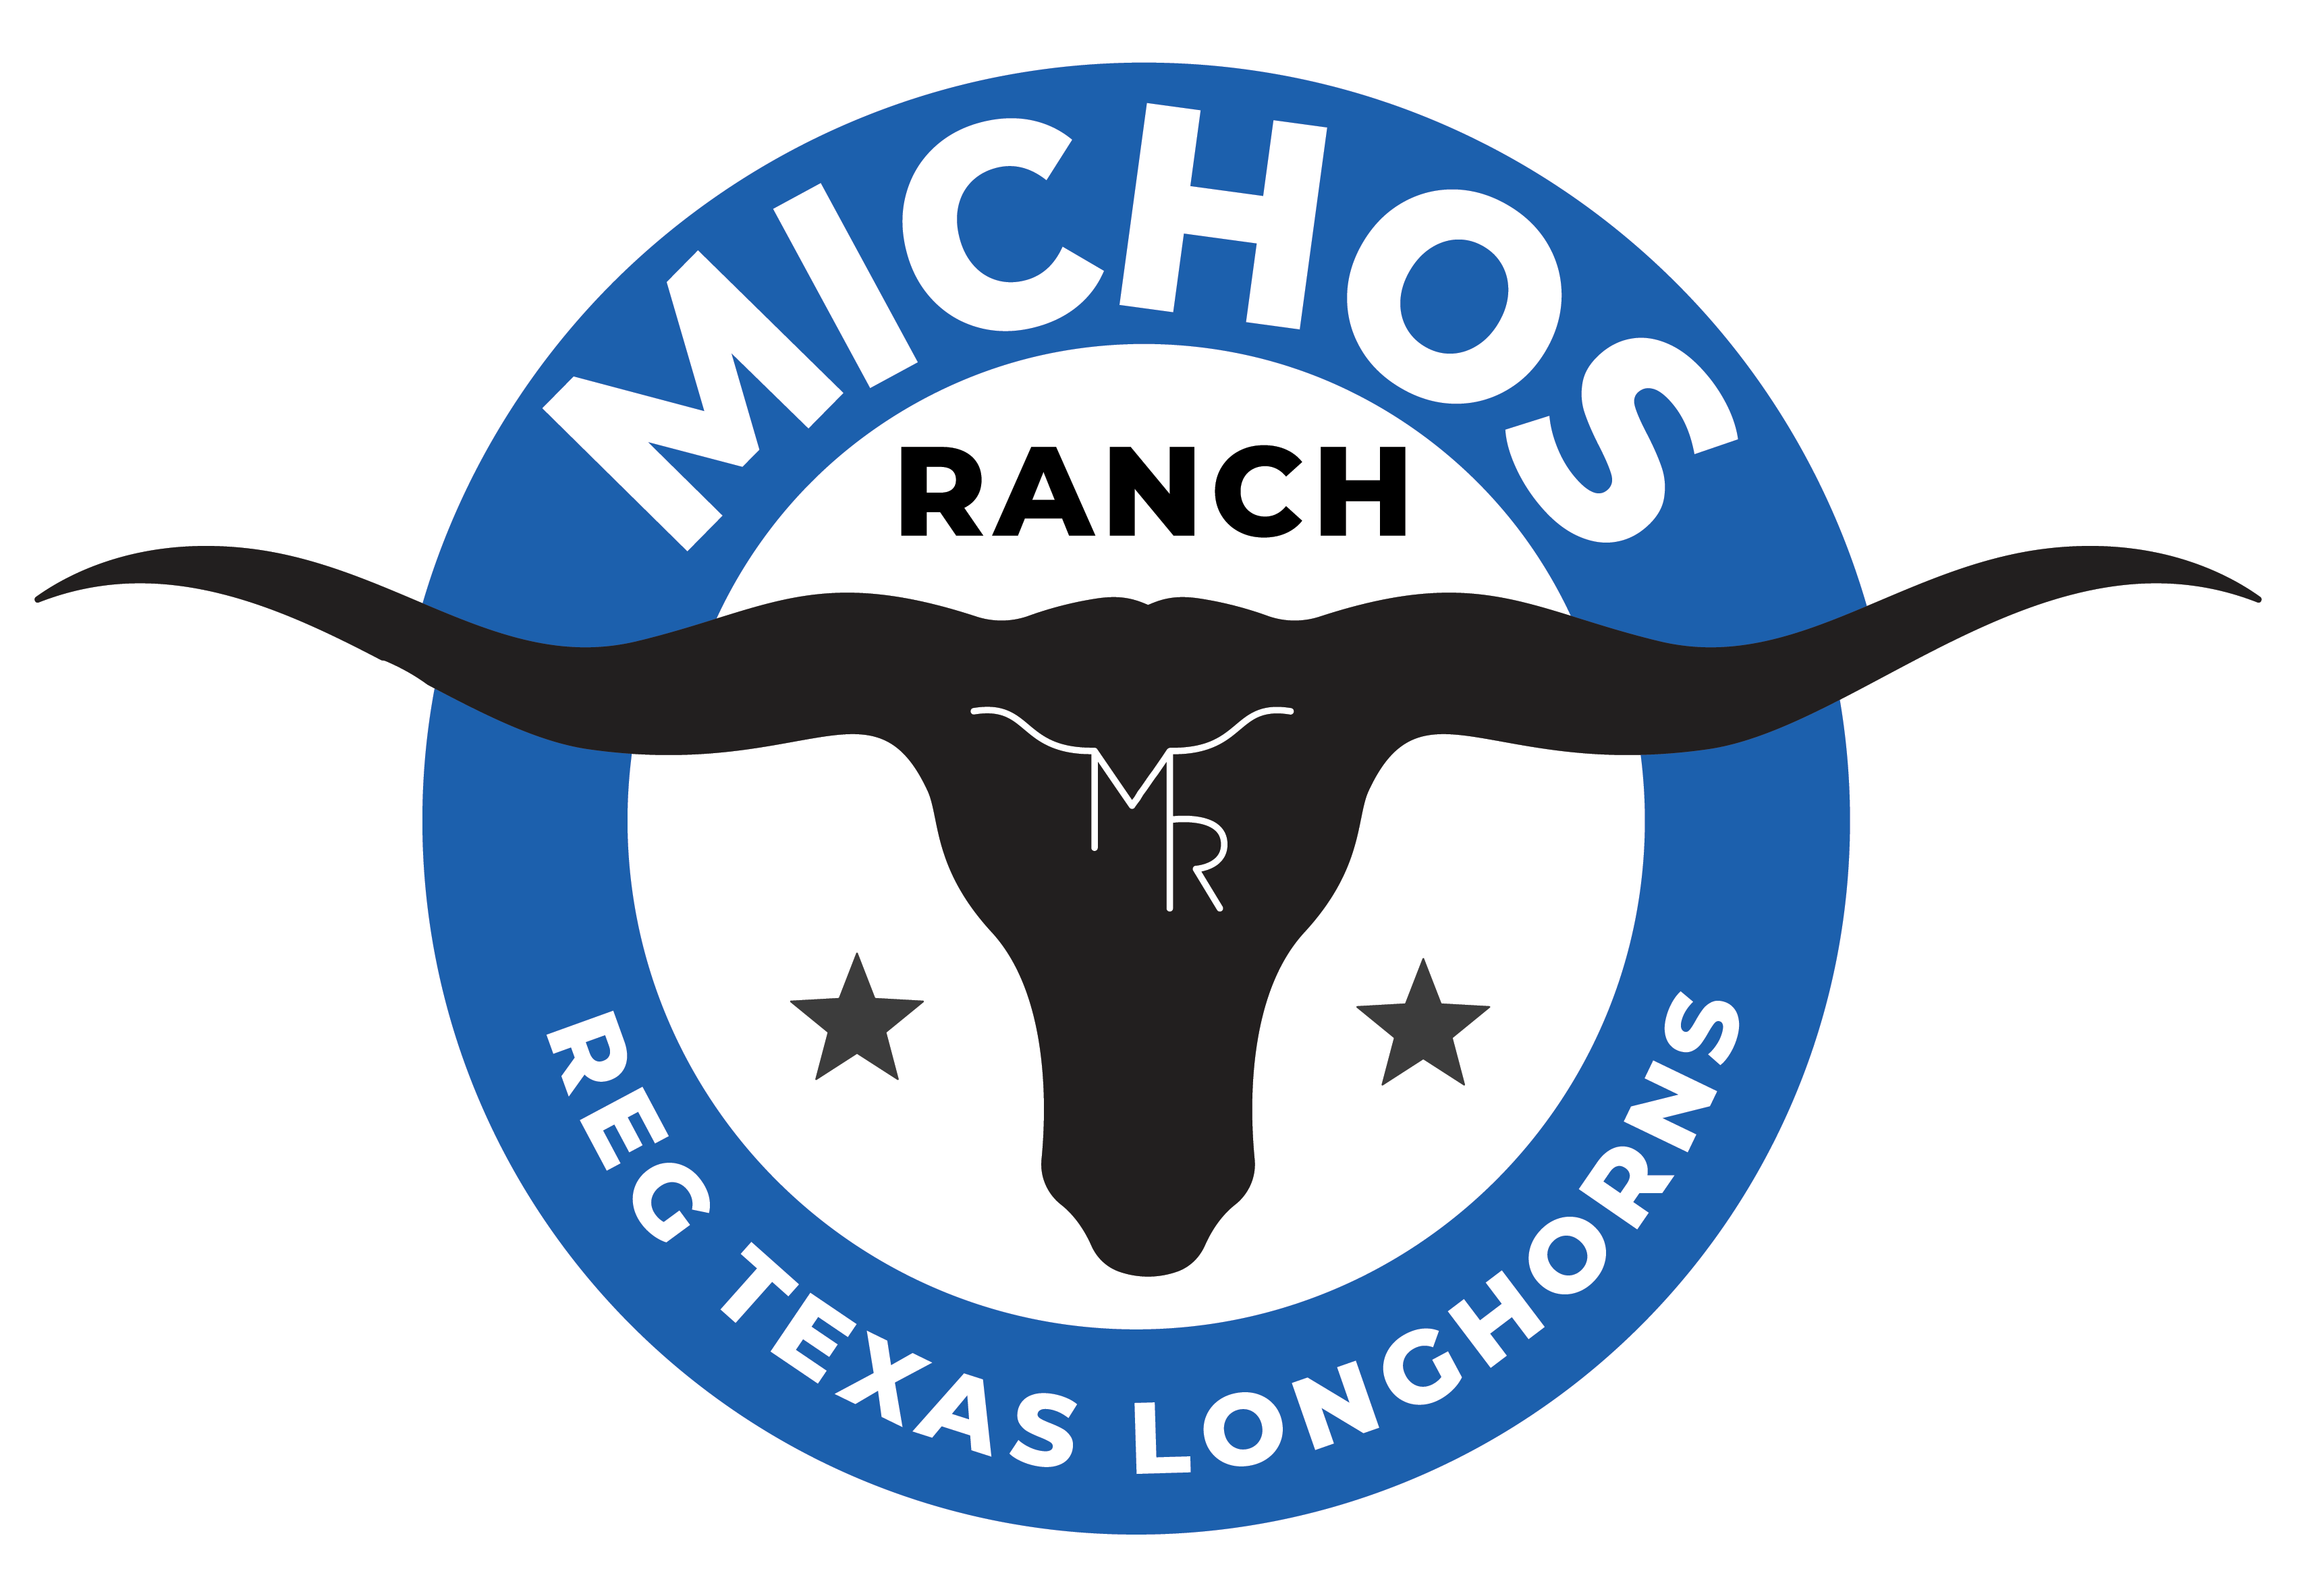 Michos Ranch